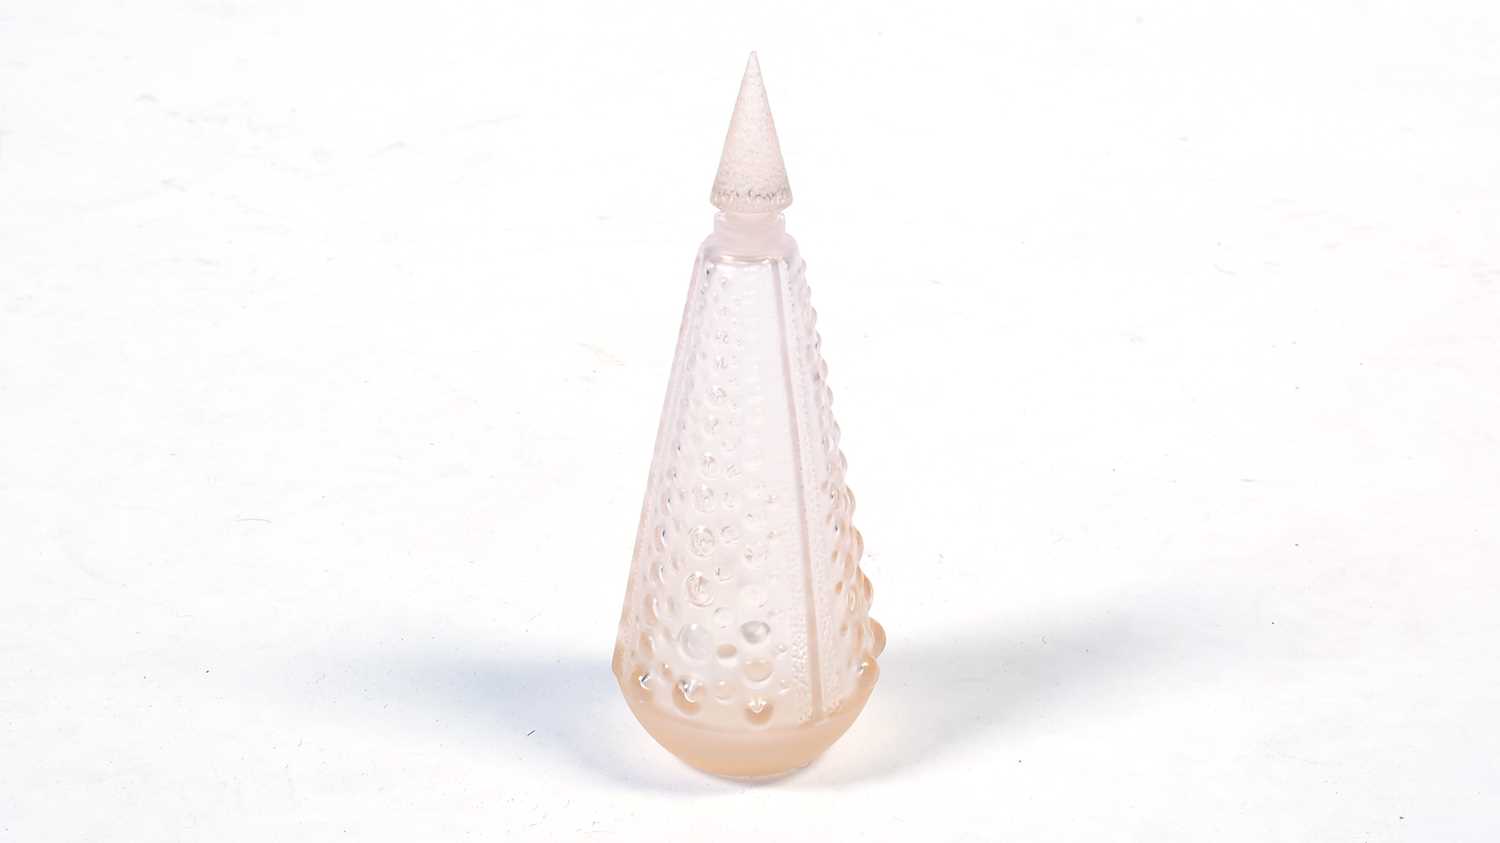 Lalique Flacon Perles scent bottle